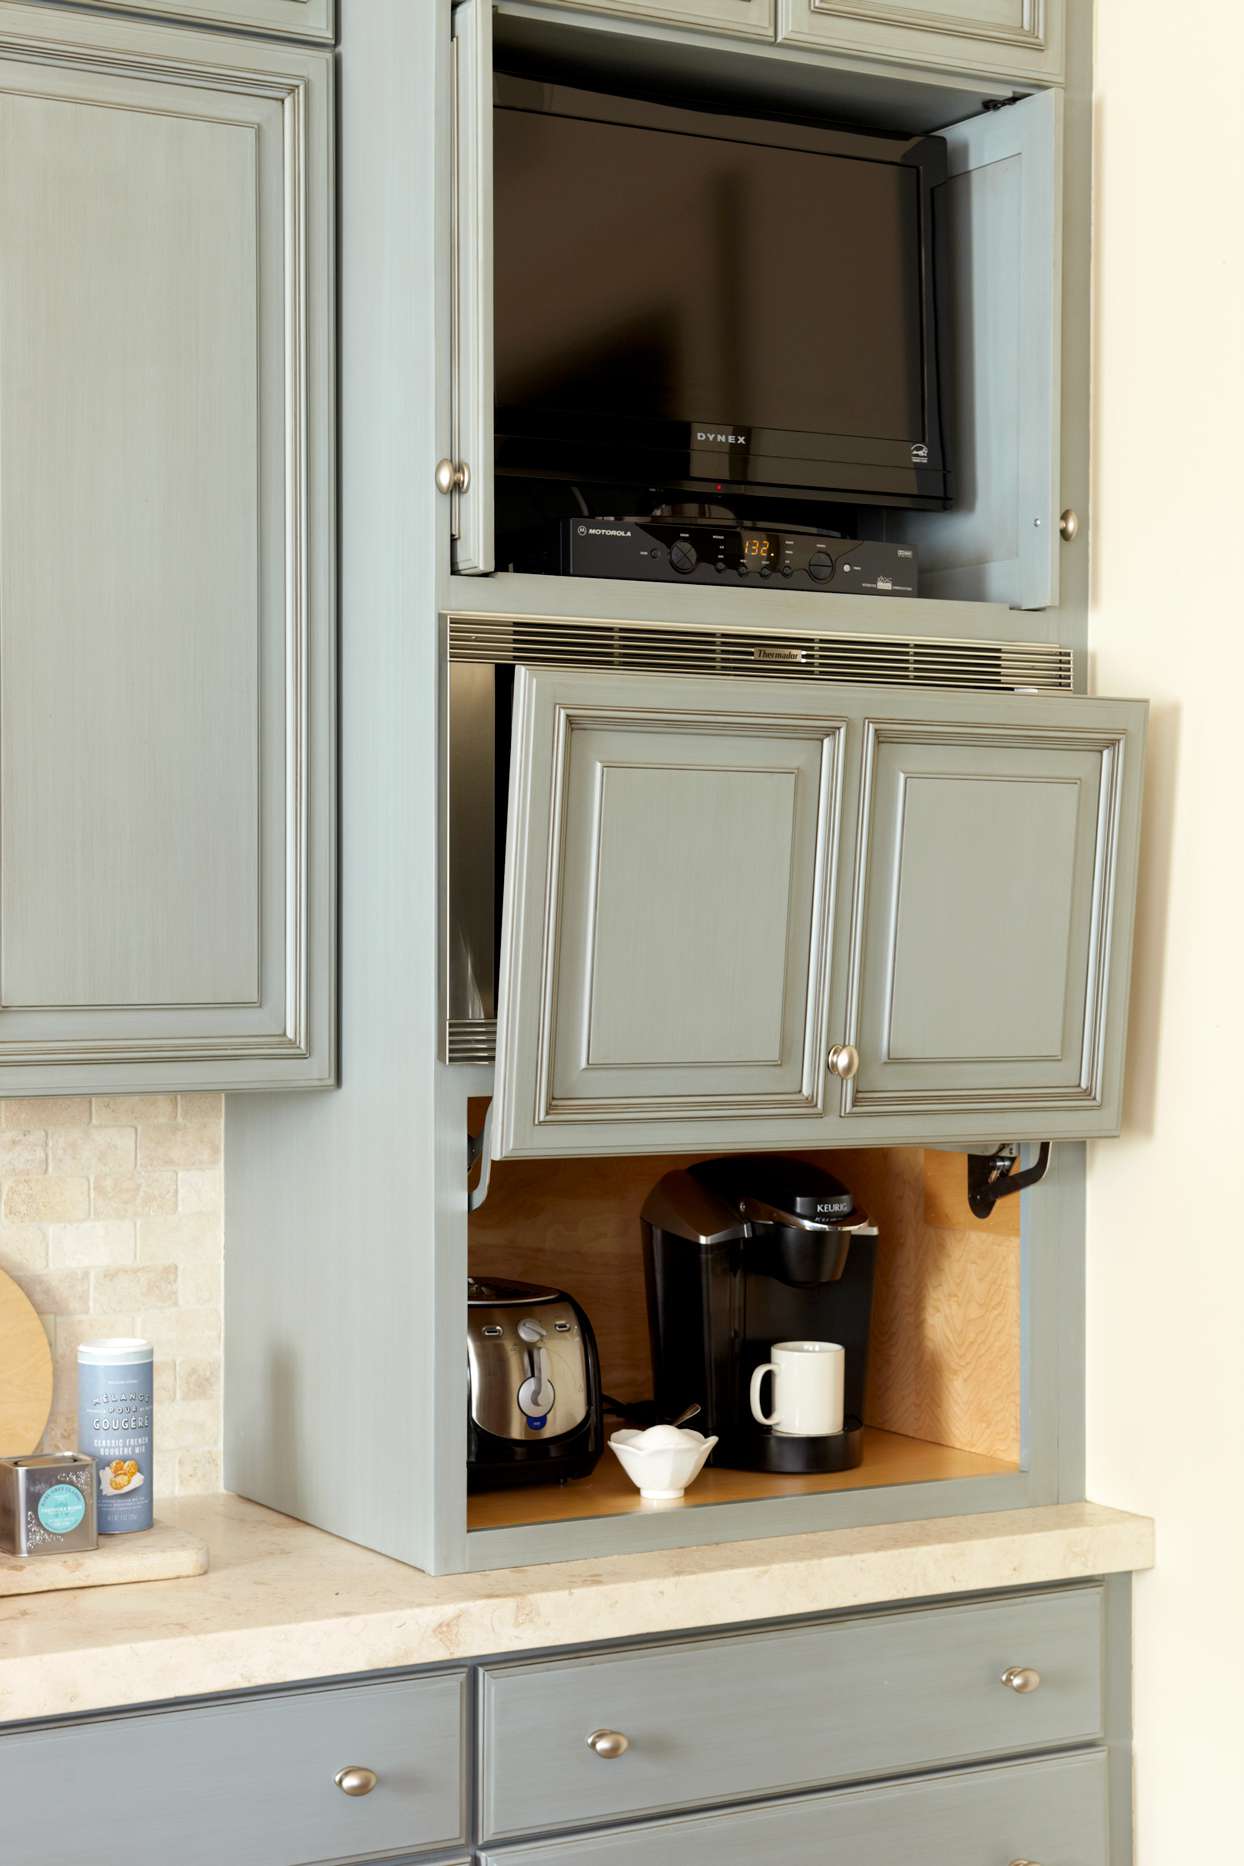 appliances in hideaway cabinet